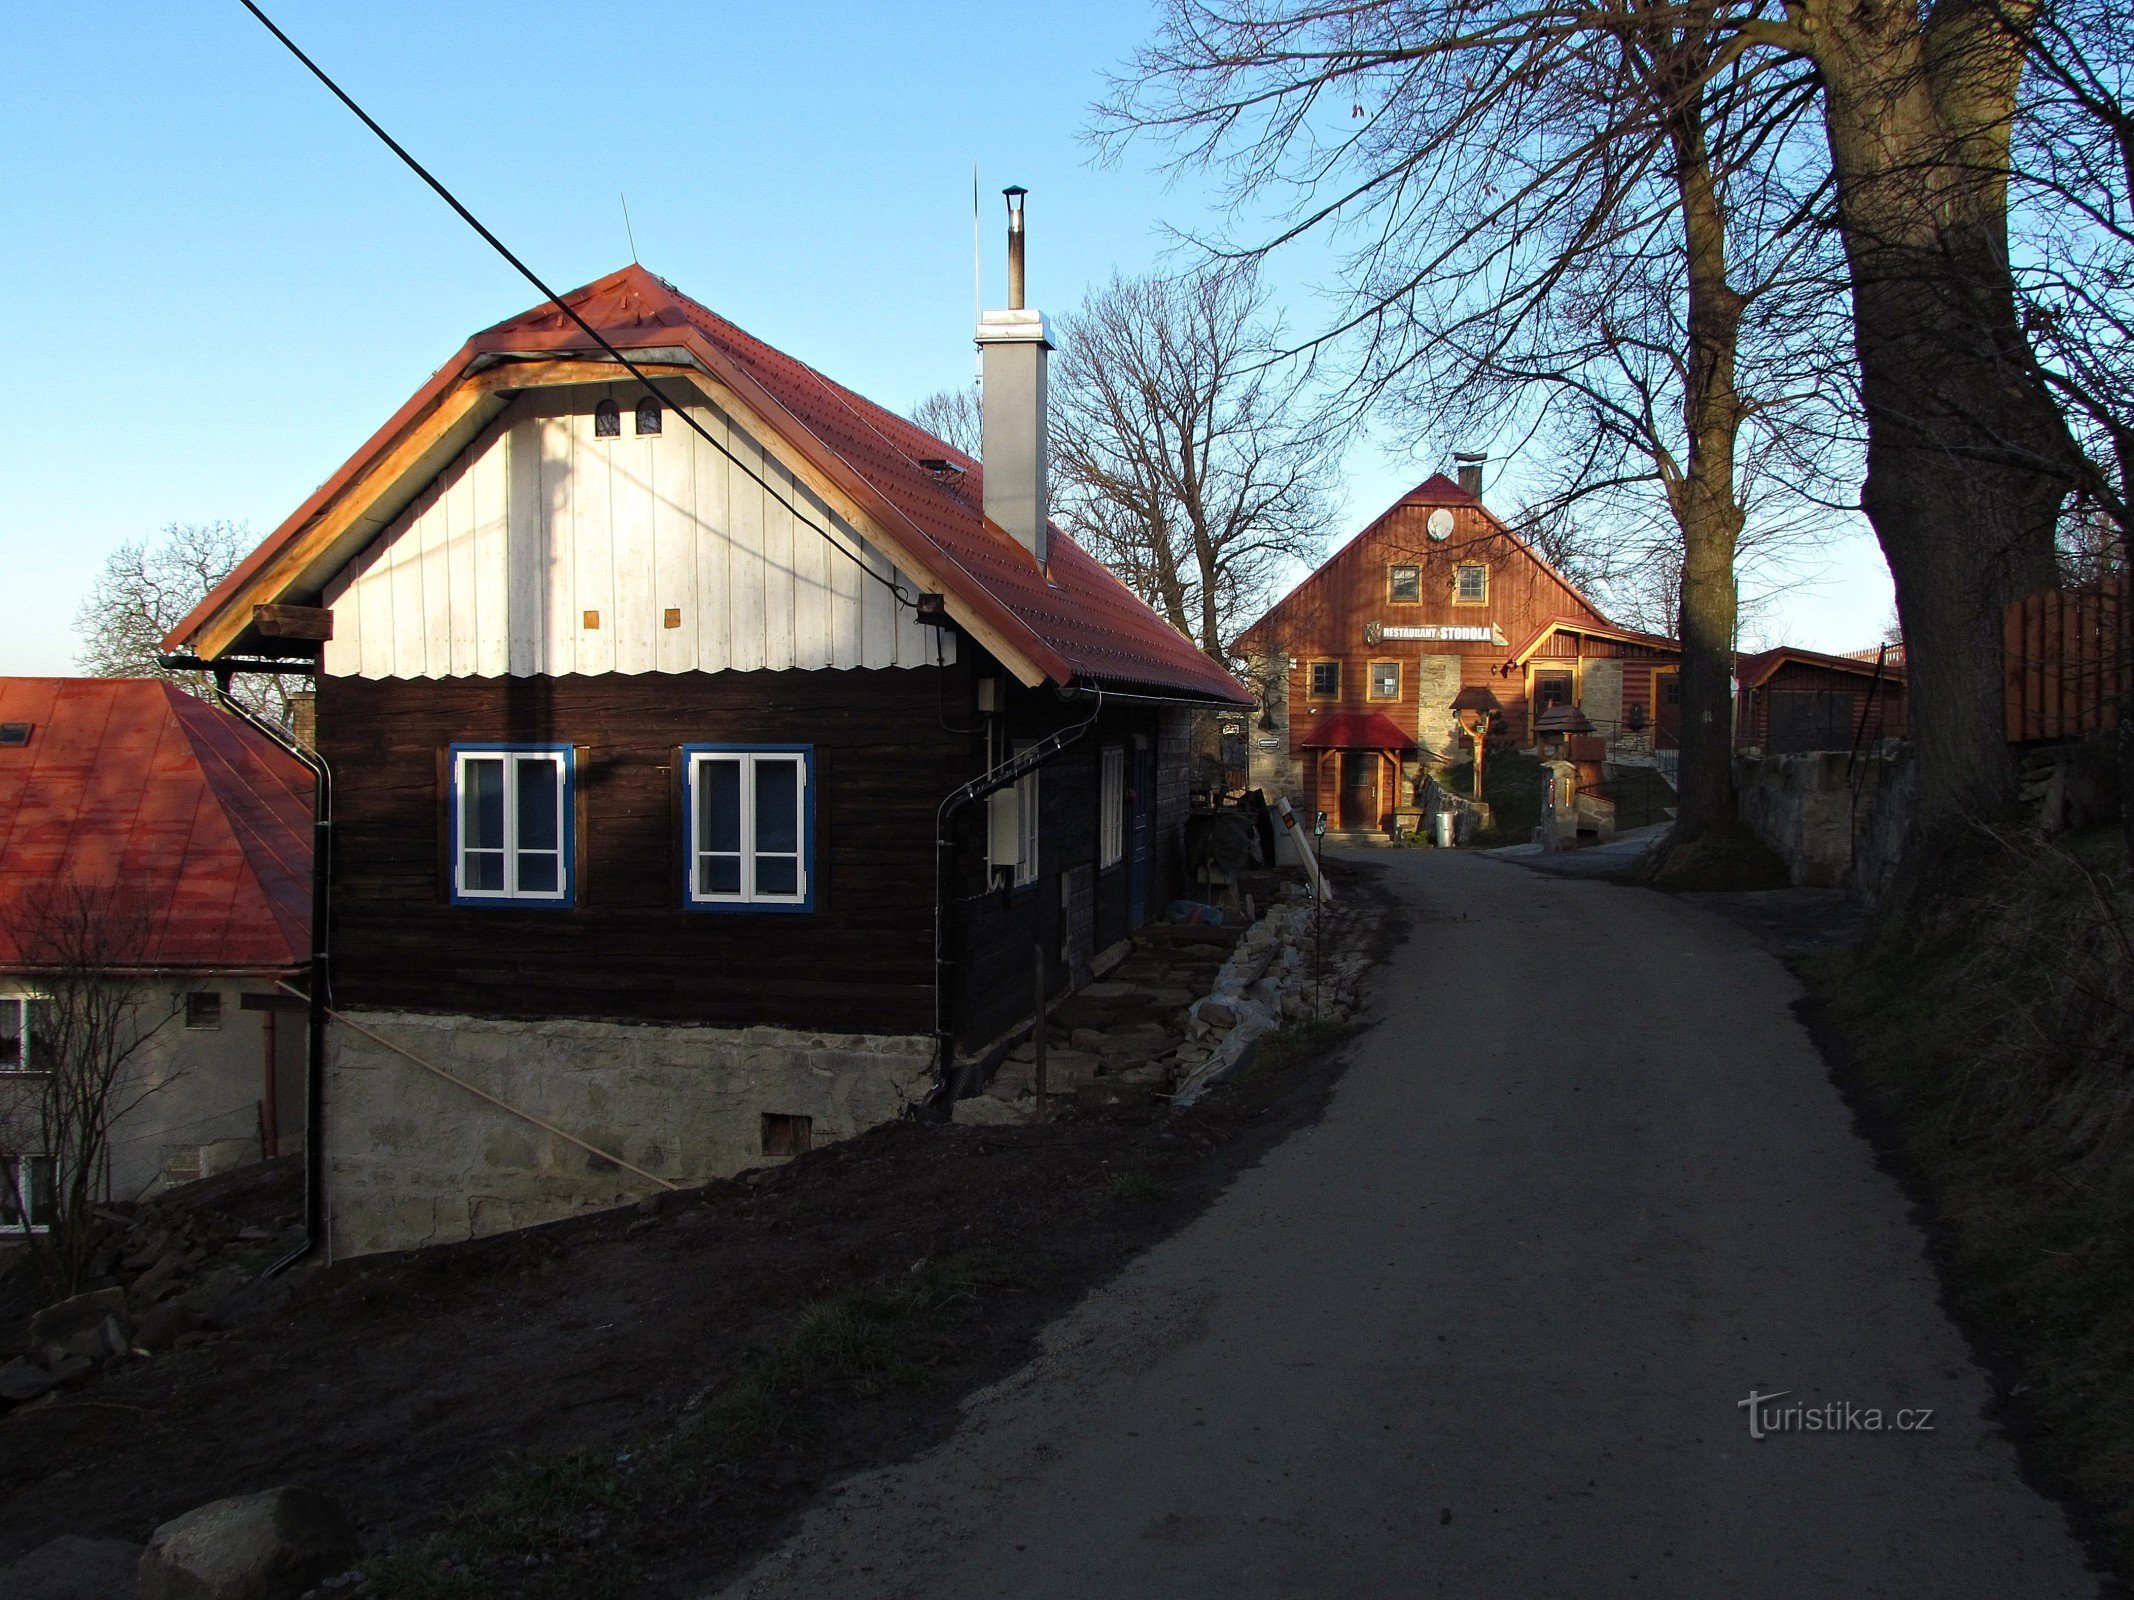 Pulčín - ein wunderschönes walachisches Dorf